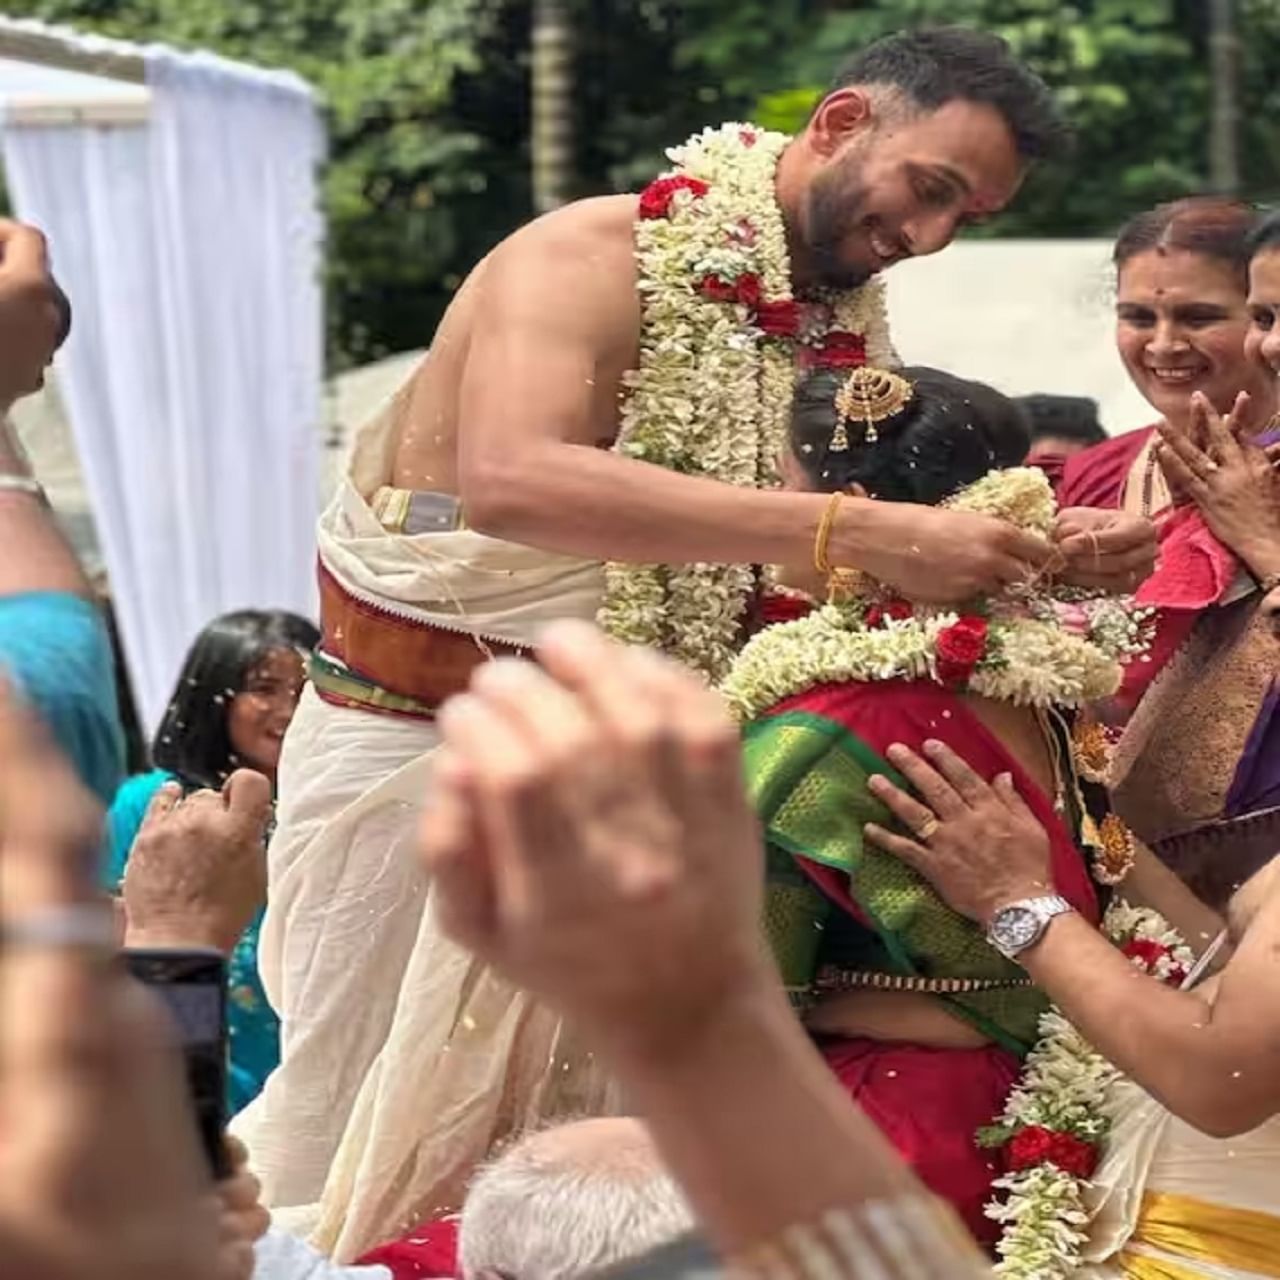 प्रसिद्ध कृष्णाने हिंदू परंपरेनुसार लग्न केलं. याआधी 2 दिवसांपूर्वी 6 जून रोजी प्रसिद्धचा साखरपुडा पार पडला.